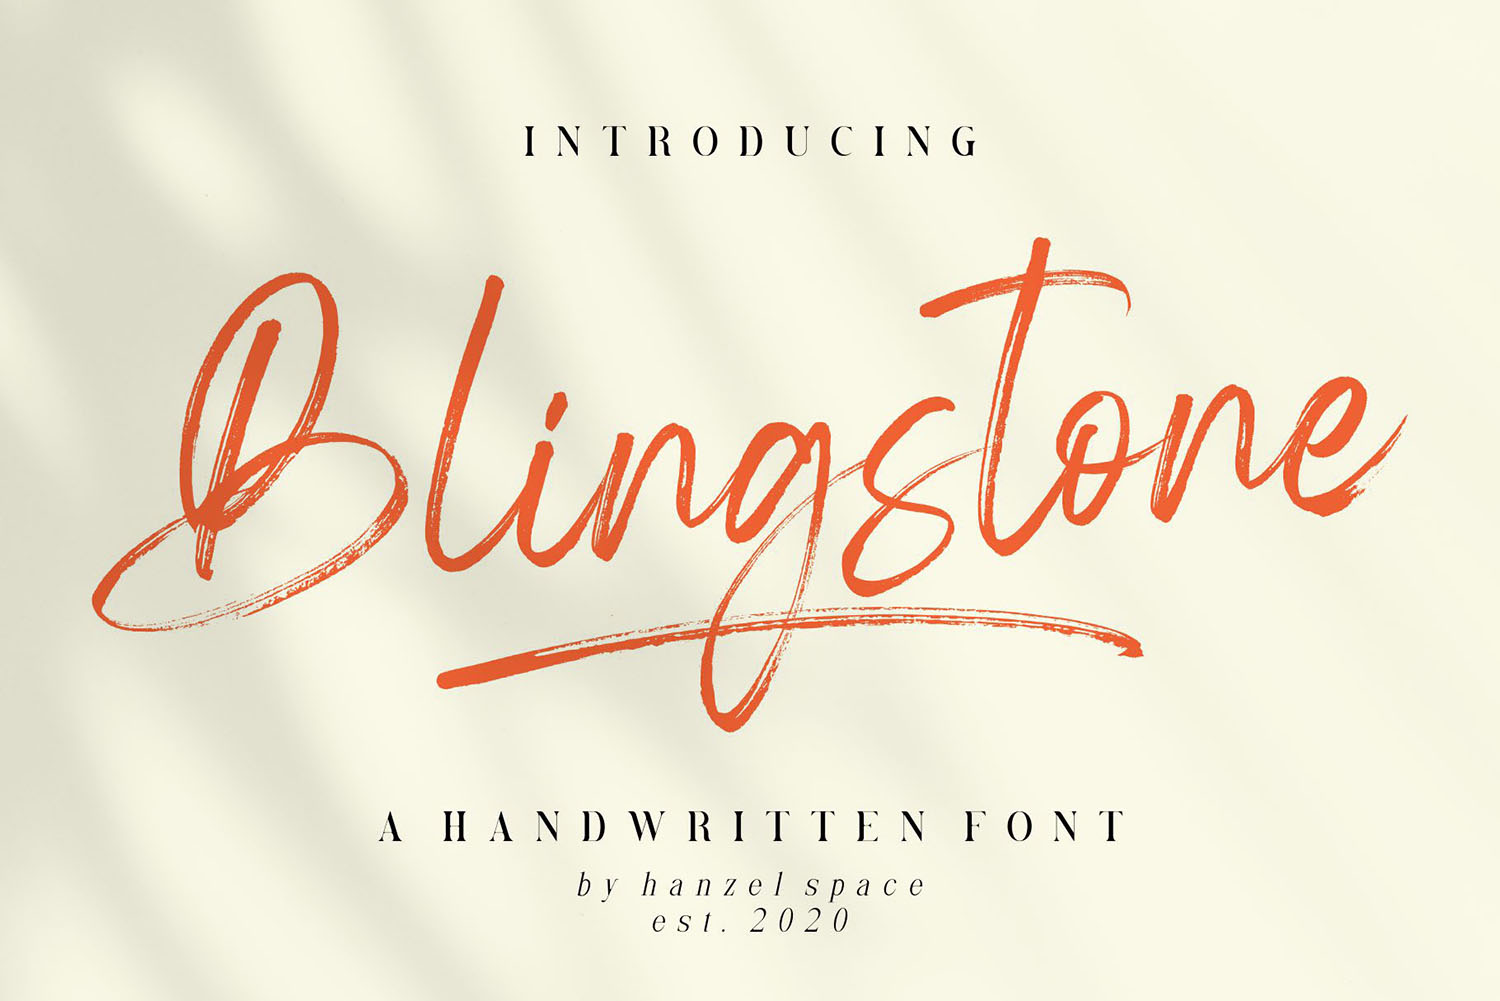 Blingstone Free Font